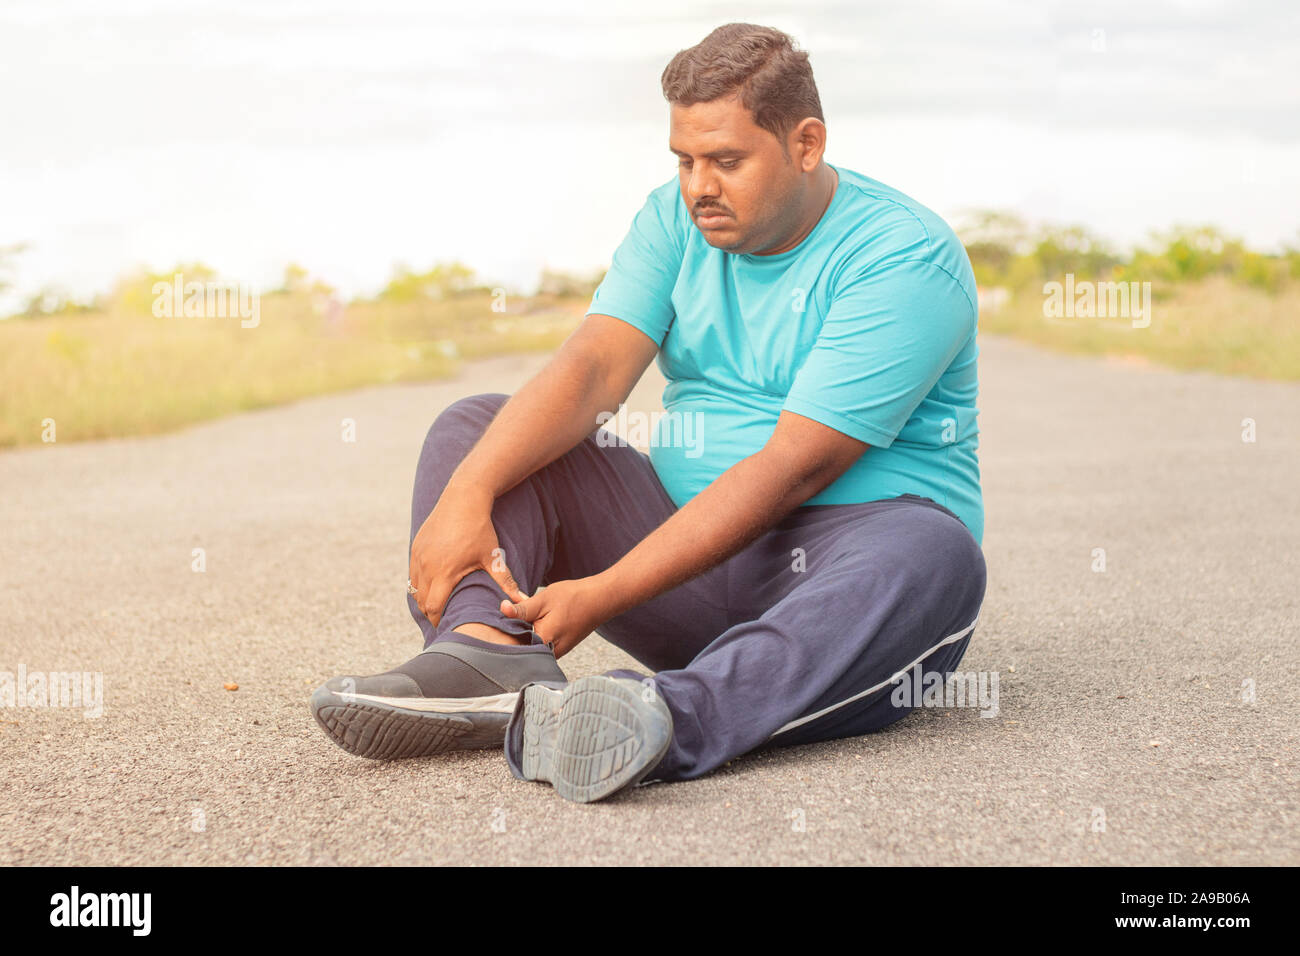 Concept de tendon de la jambe de Fat Man - personne obèse souffrant de douleurs musculaires de la jambe de portefeuille - l'excès de l'homme au concept de remise en forme parc extérieur. Banque D'Images